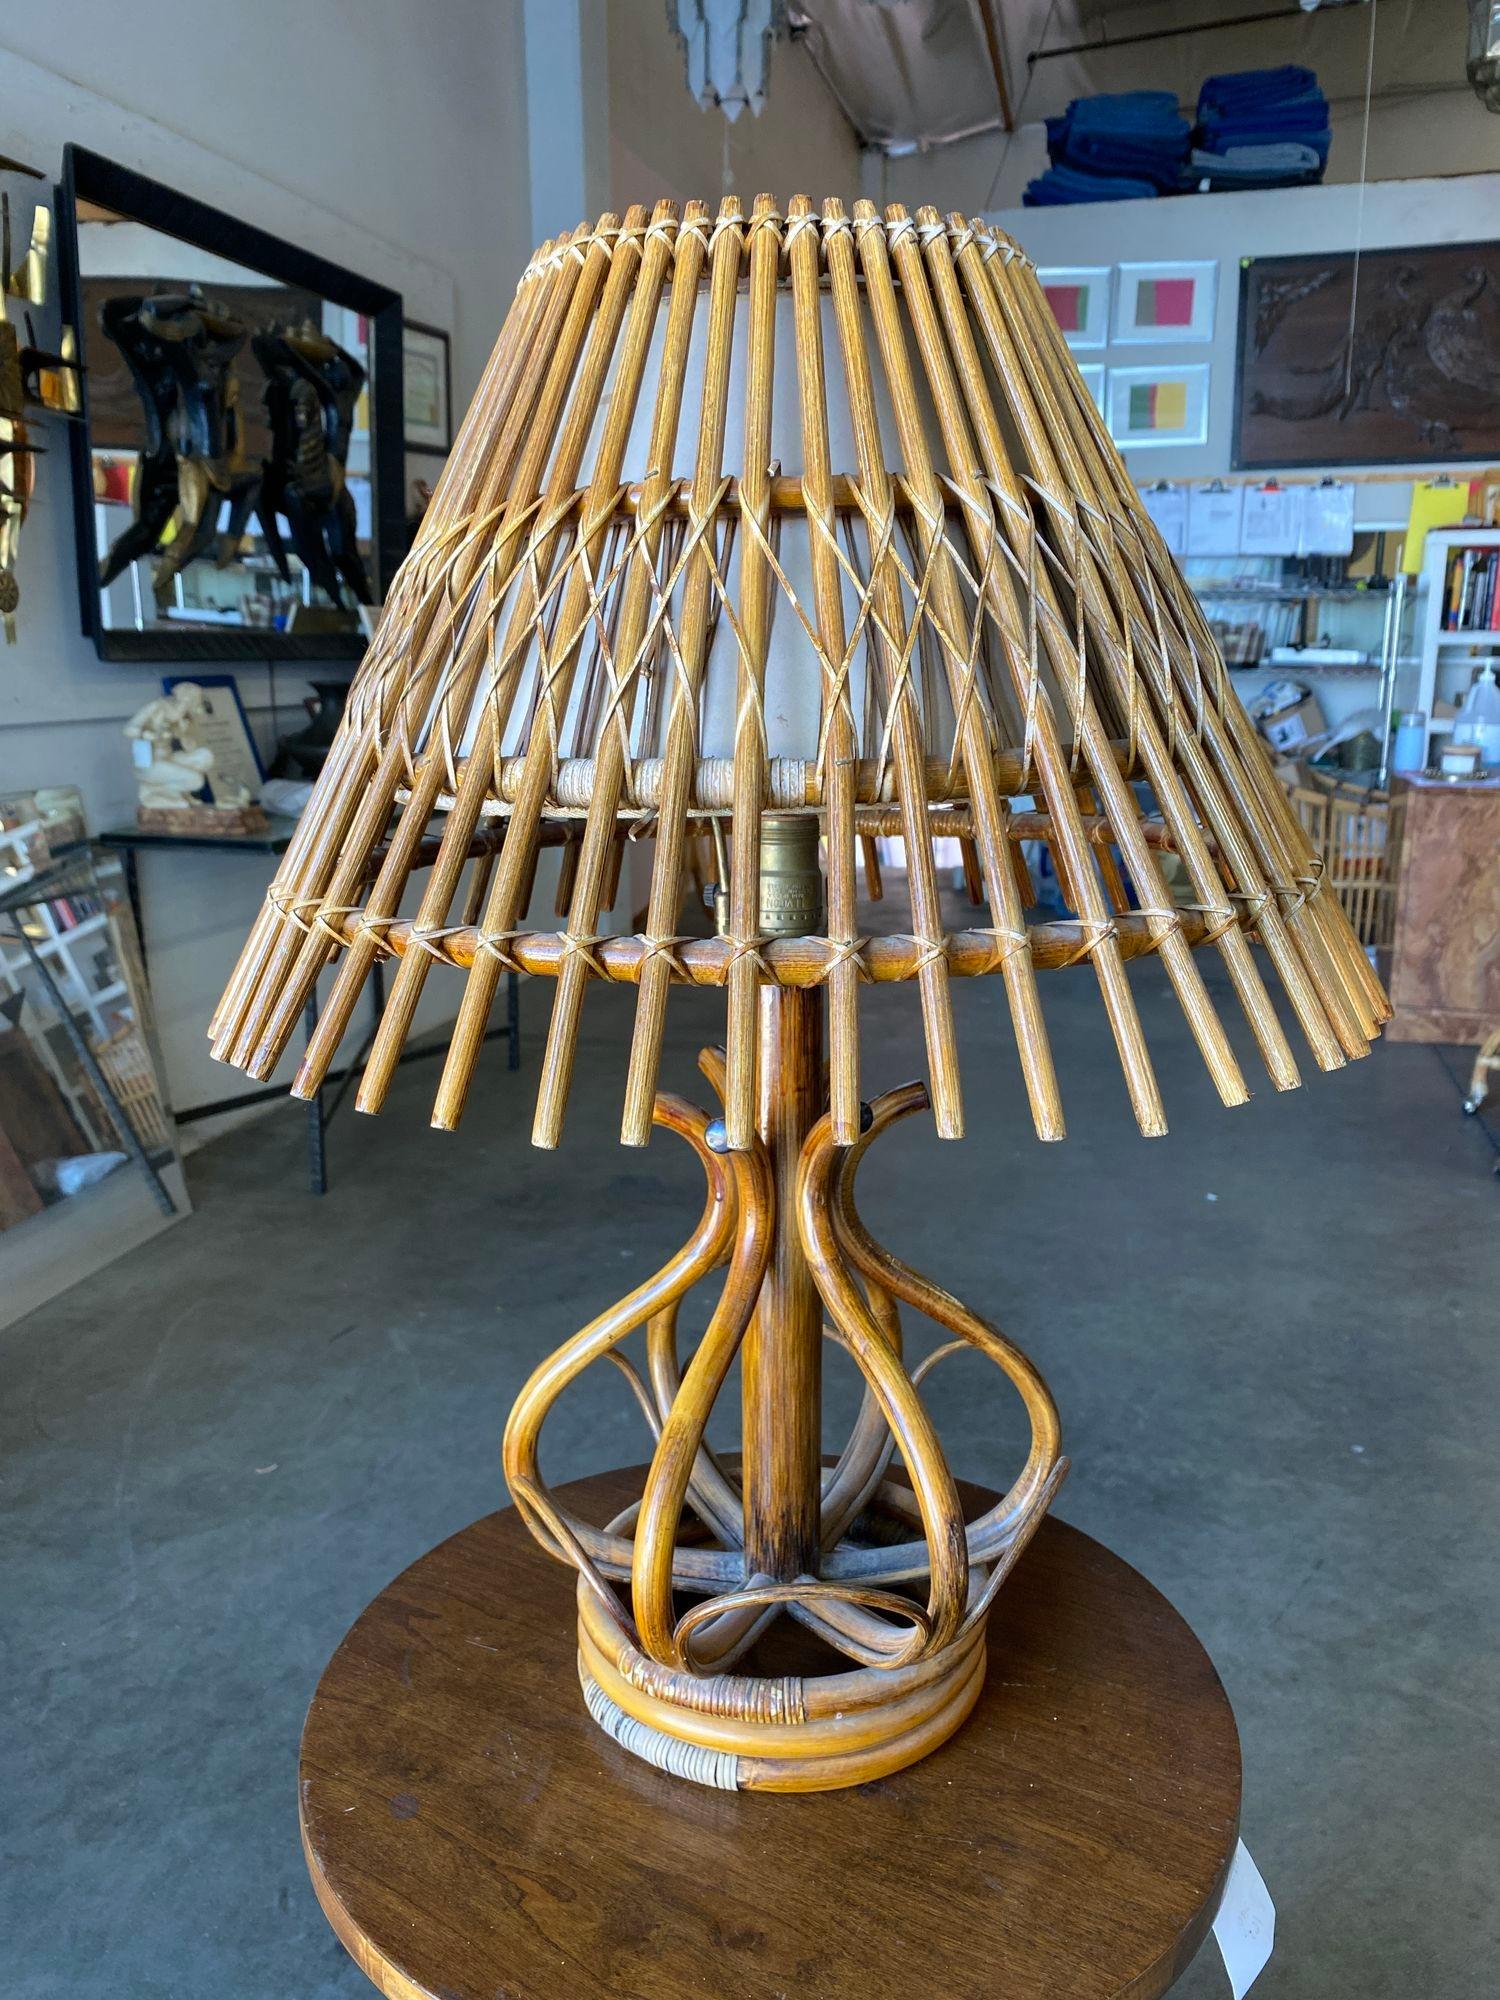 Lampe de table moderniste en rotin empilé avec abat-jour en rotin empilé vers l'extérieur.

Lampe : 20